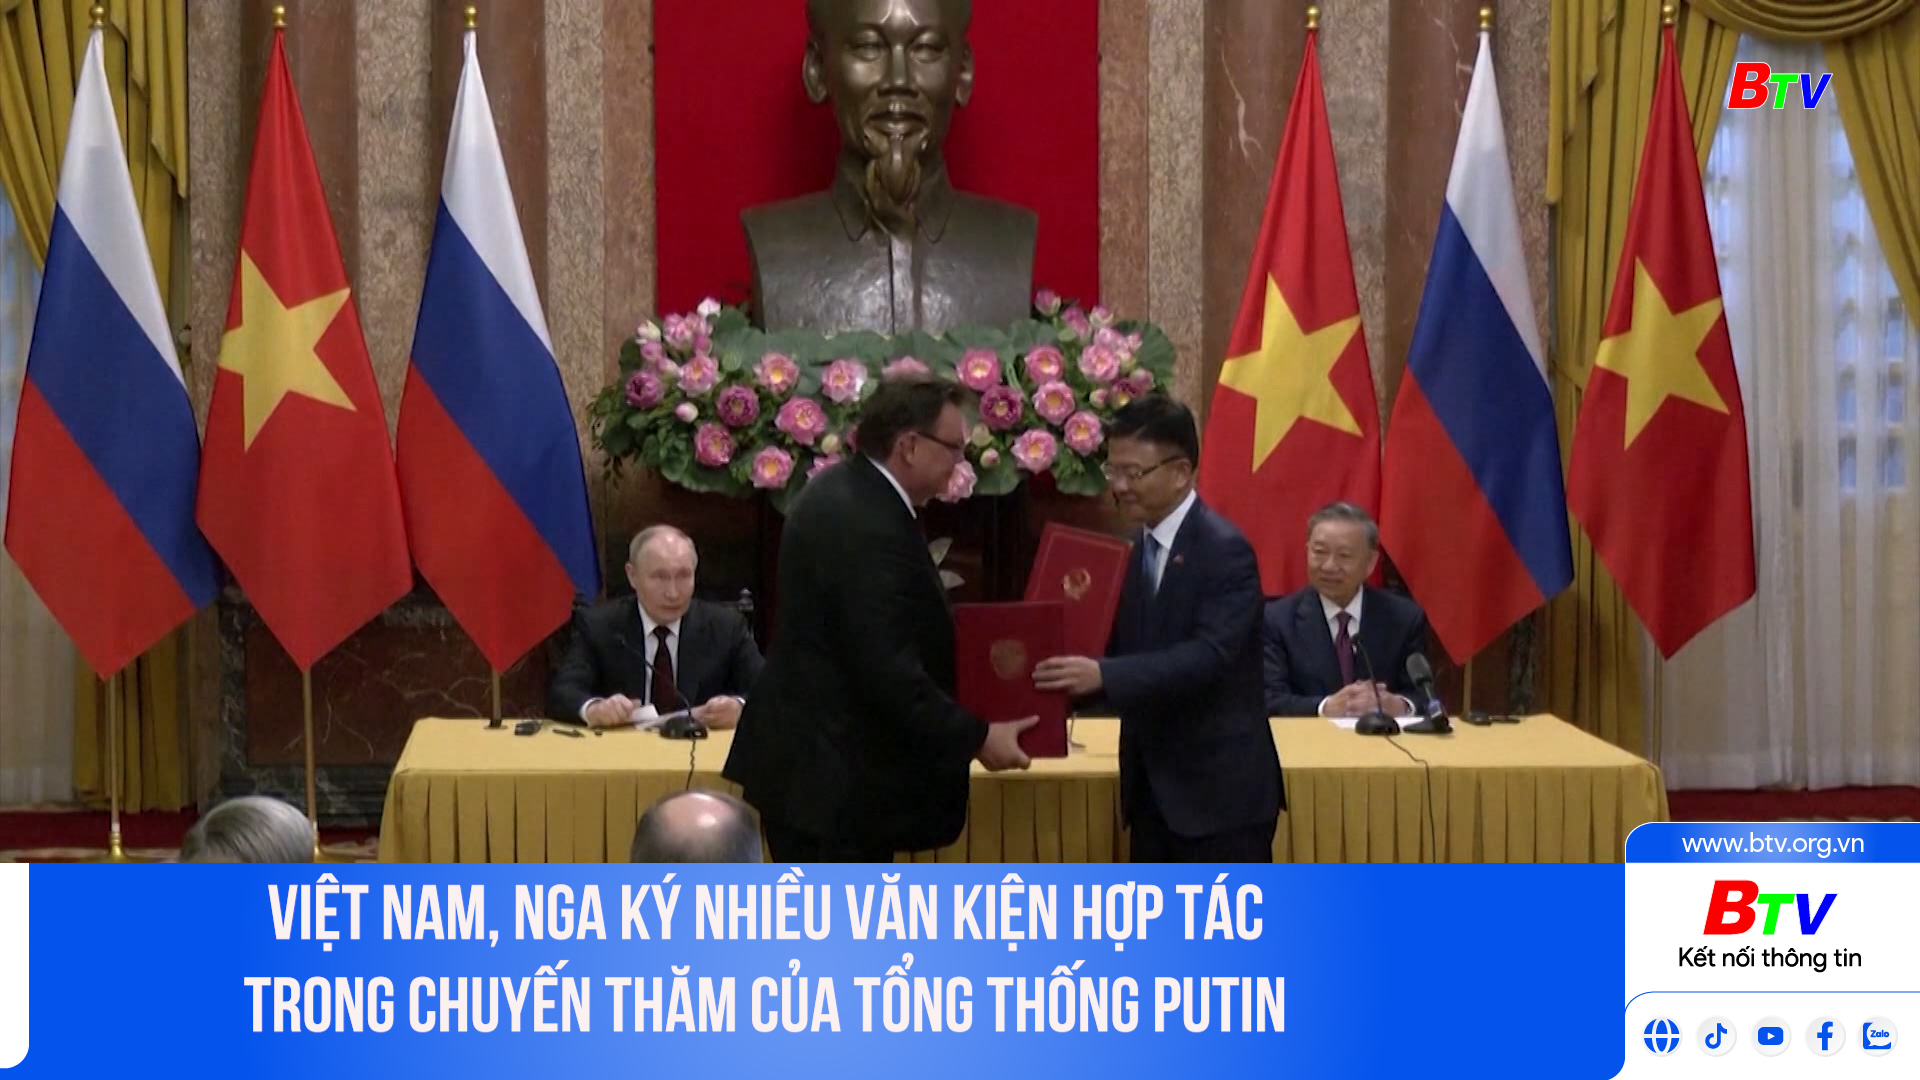 	Việt Nam, Nga ký nhiều văn kiện hợp tác trong chuyến thăm của Tổng thống Putin